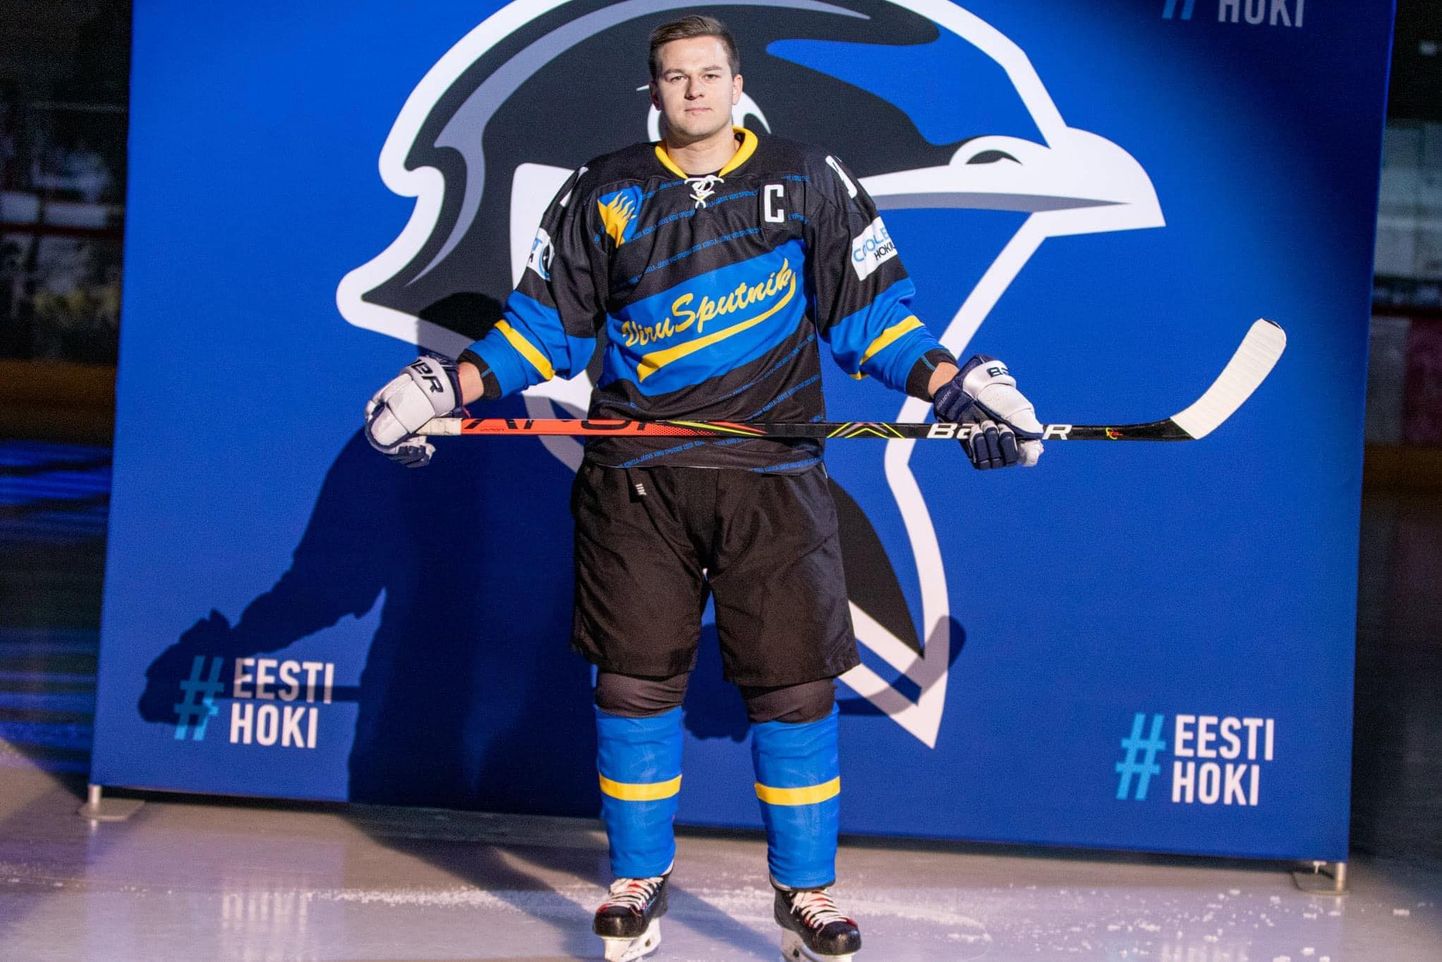 Alates sellest hooajast mängib Pavel Prokopenko hokit taas Kohtla-Järve Viru Sputniku ridades.